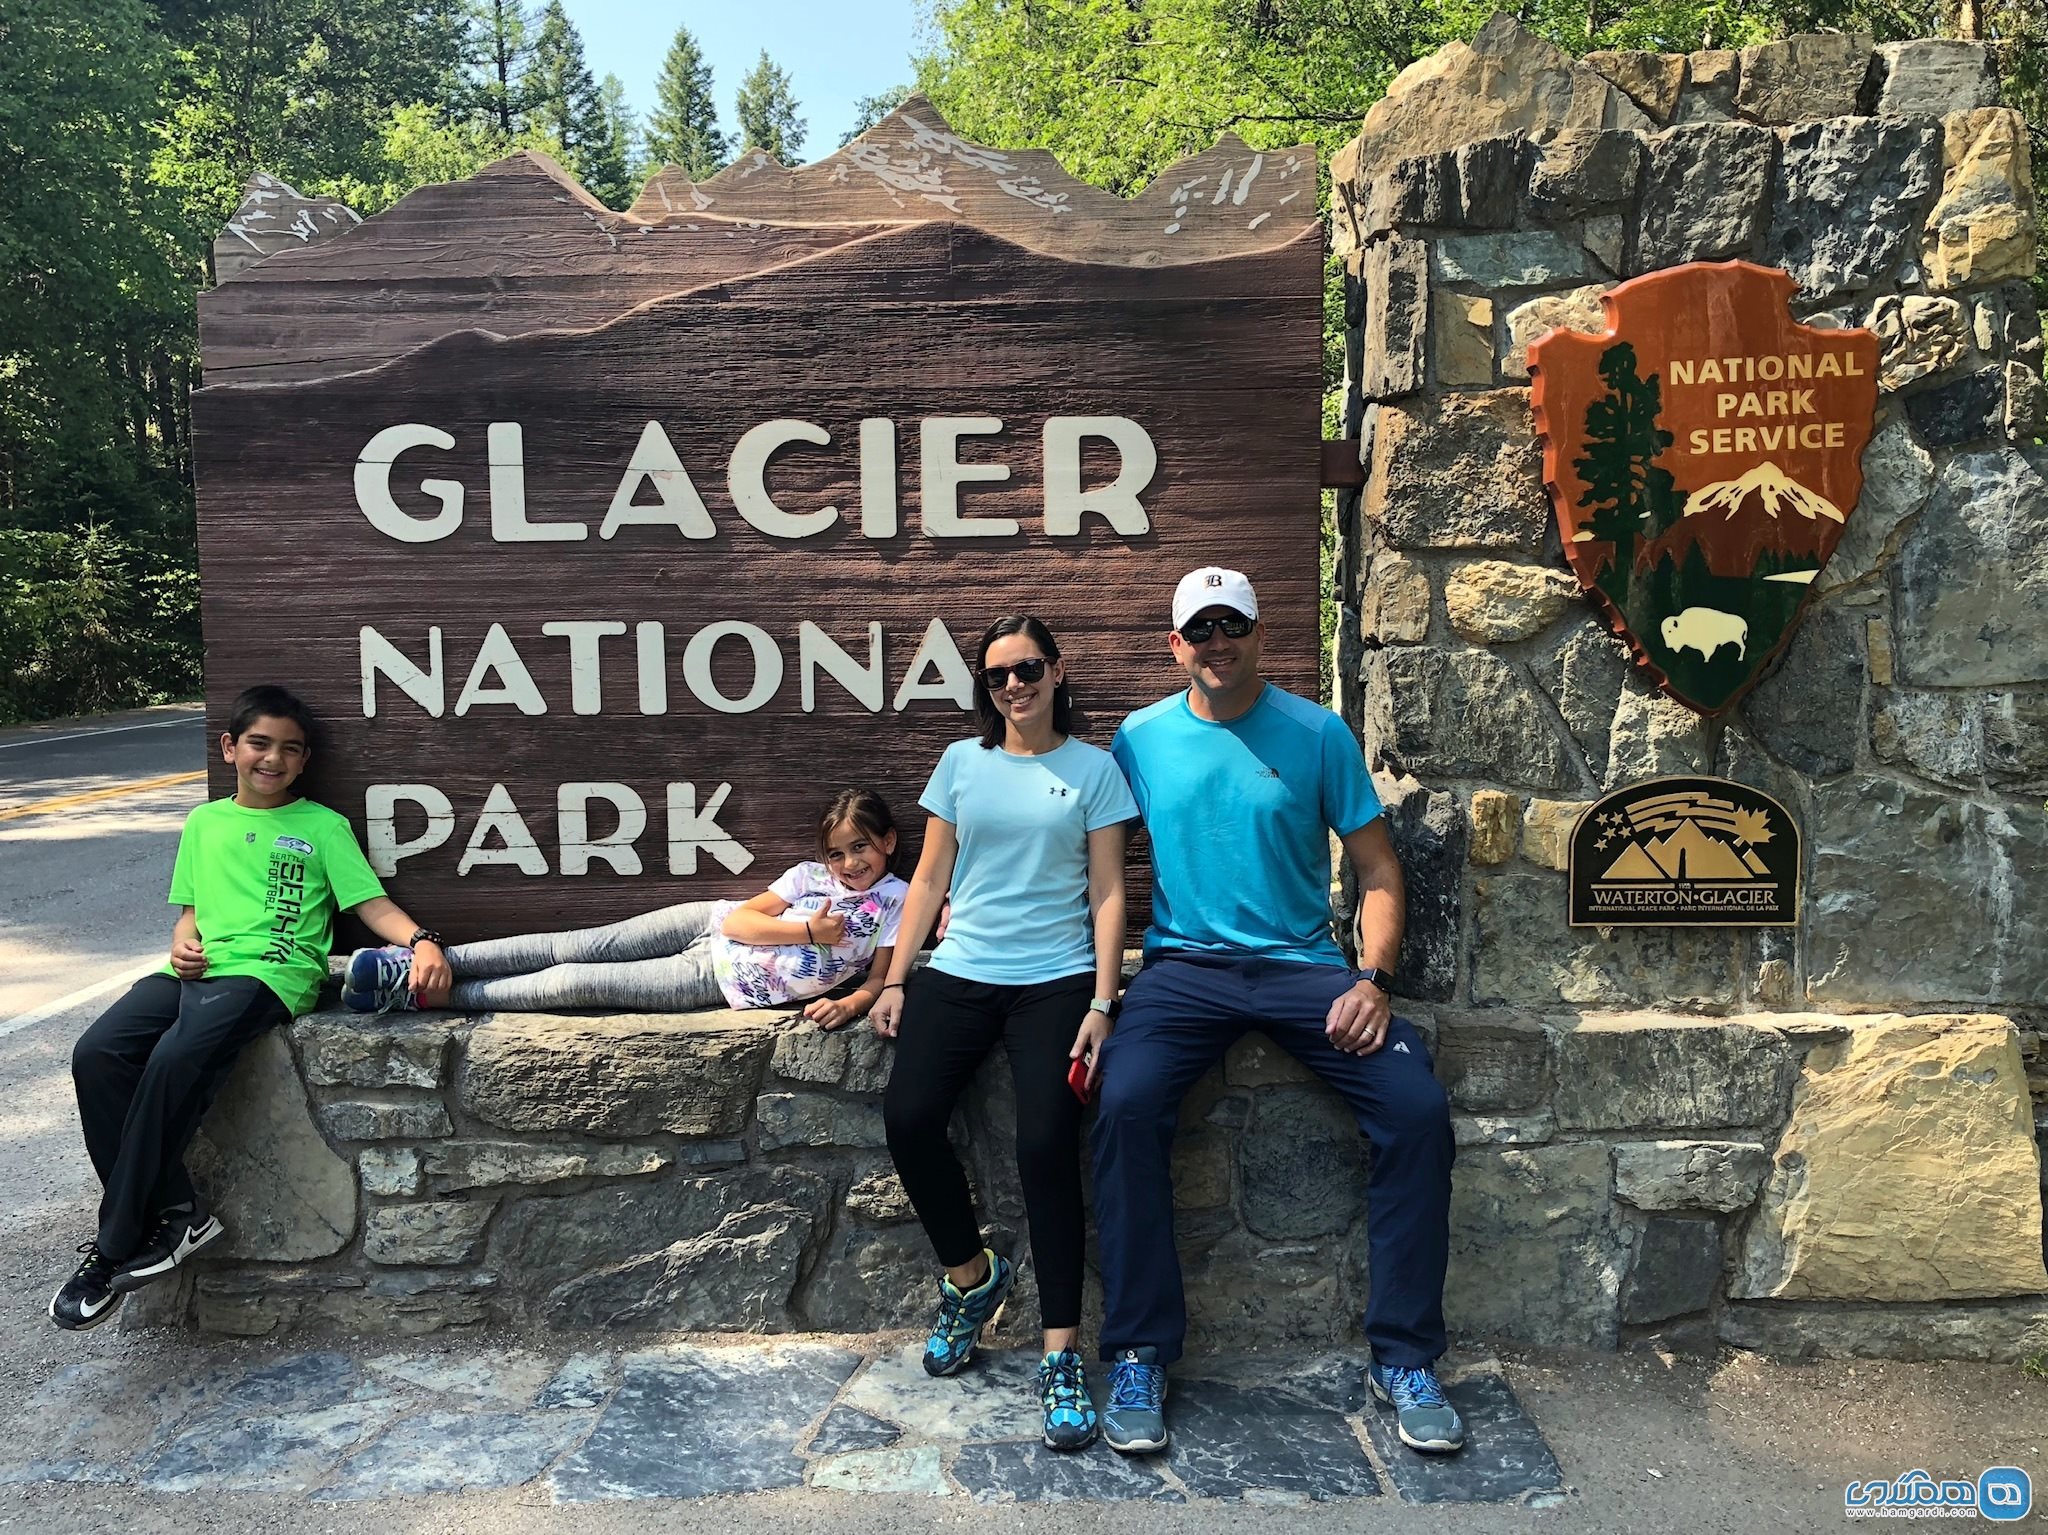 پارک ملی گلیشر Glacier National Park در مونتانا